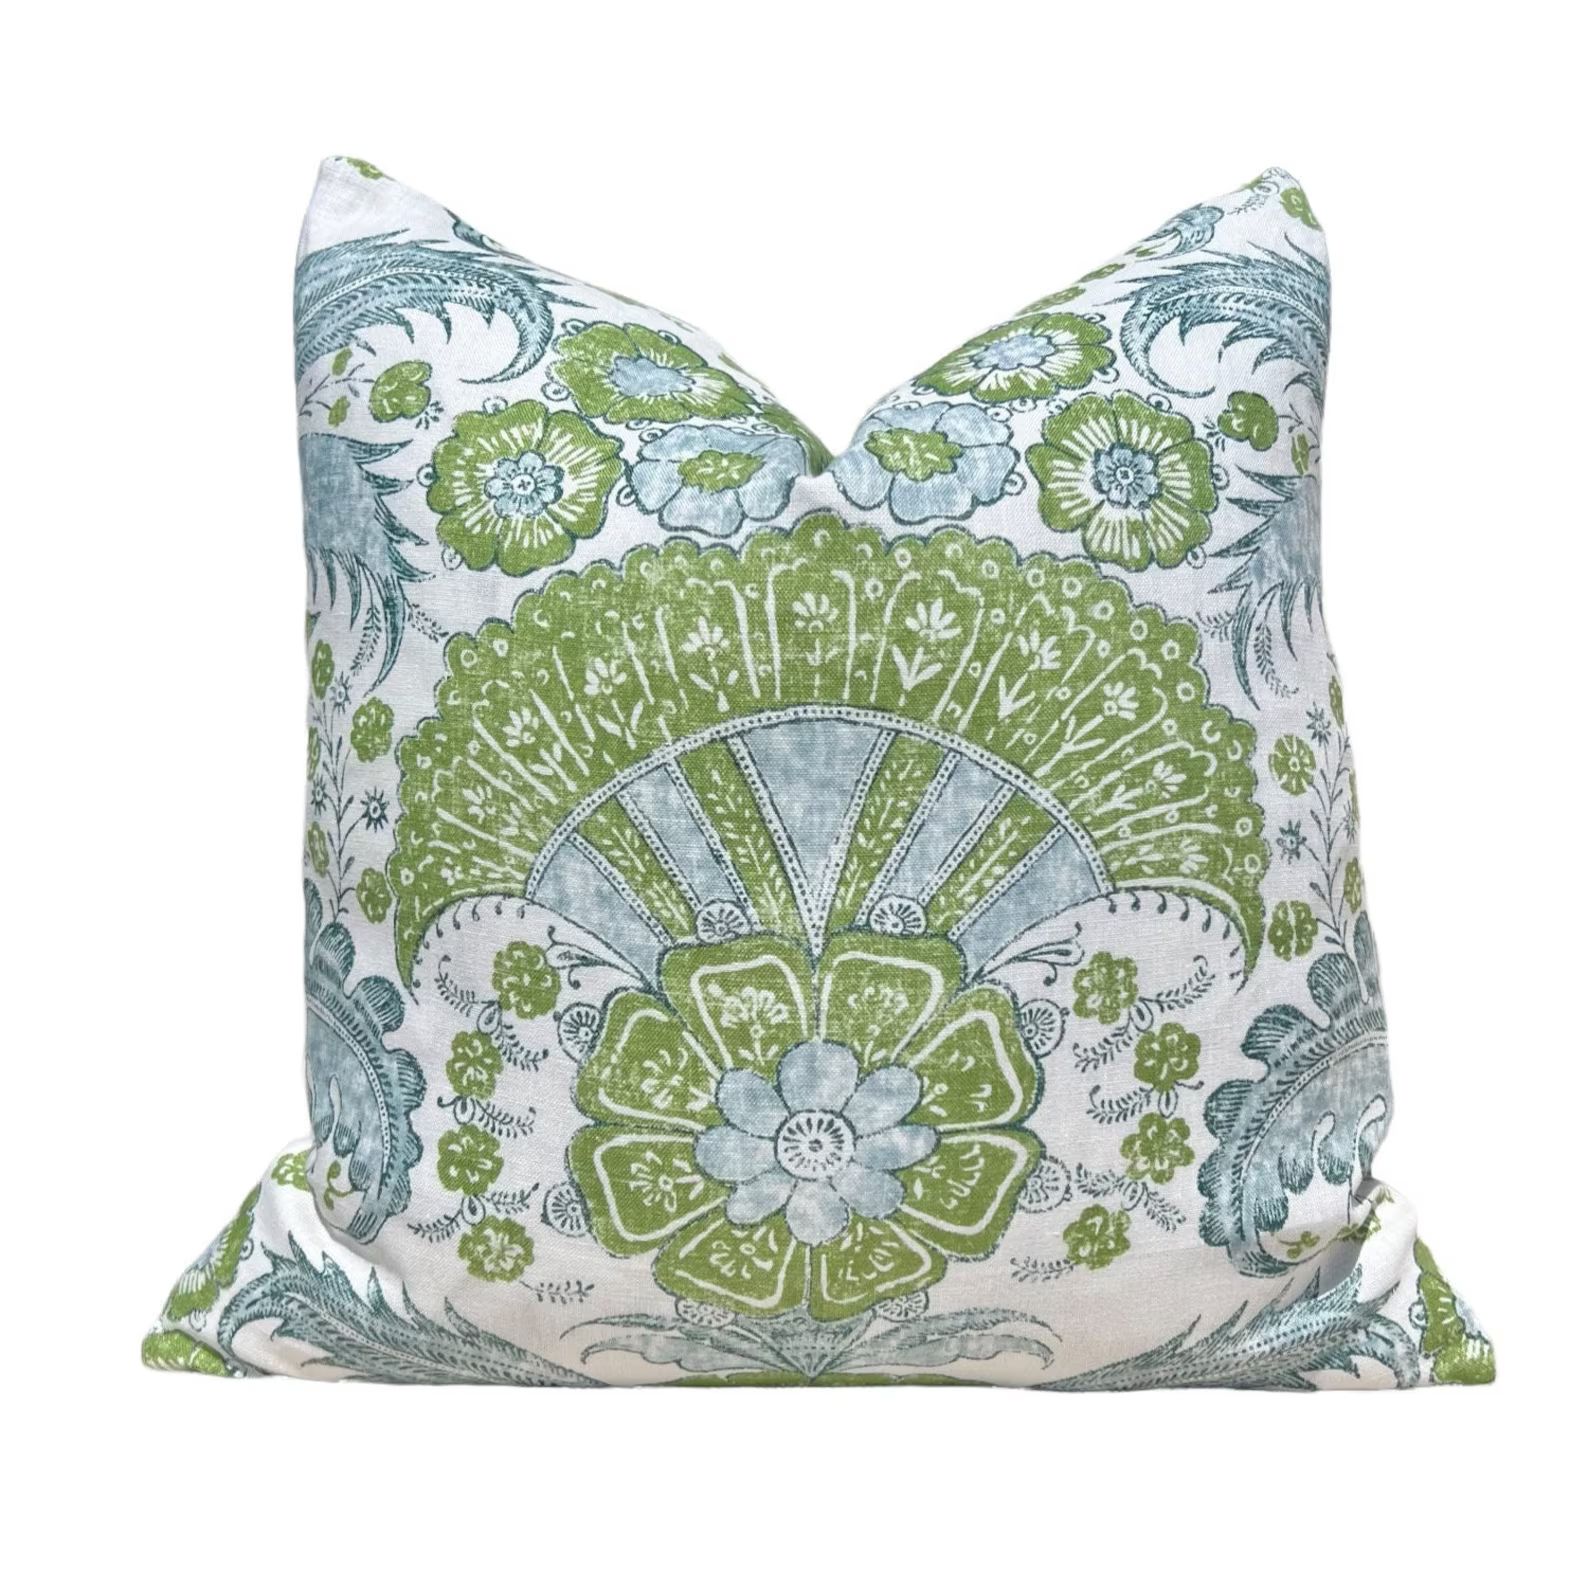 Schumacher Calicut Linen Pillow in Aqua and Green. Designer Pillows, High End Pillows, Aqua Blue ... | Etsy (US)